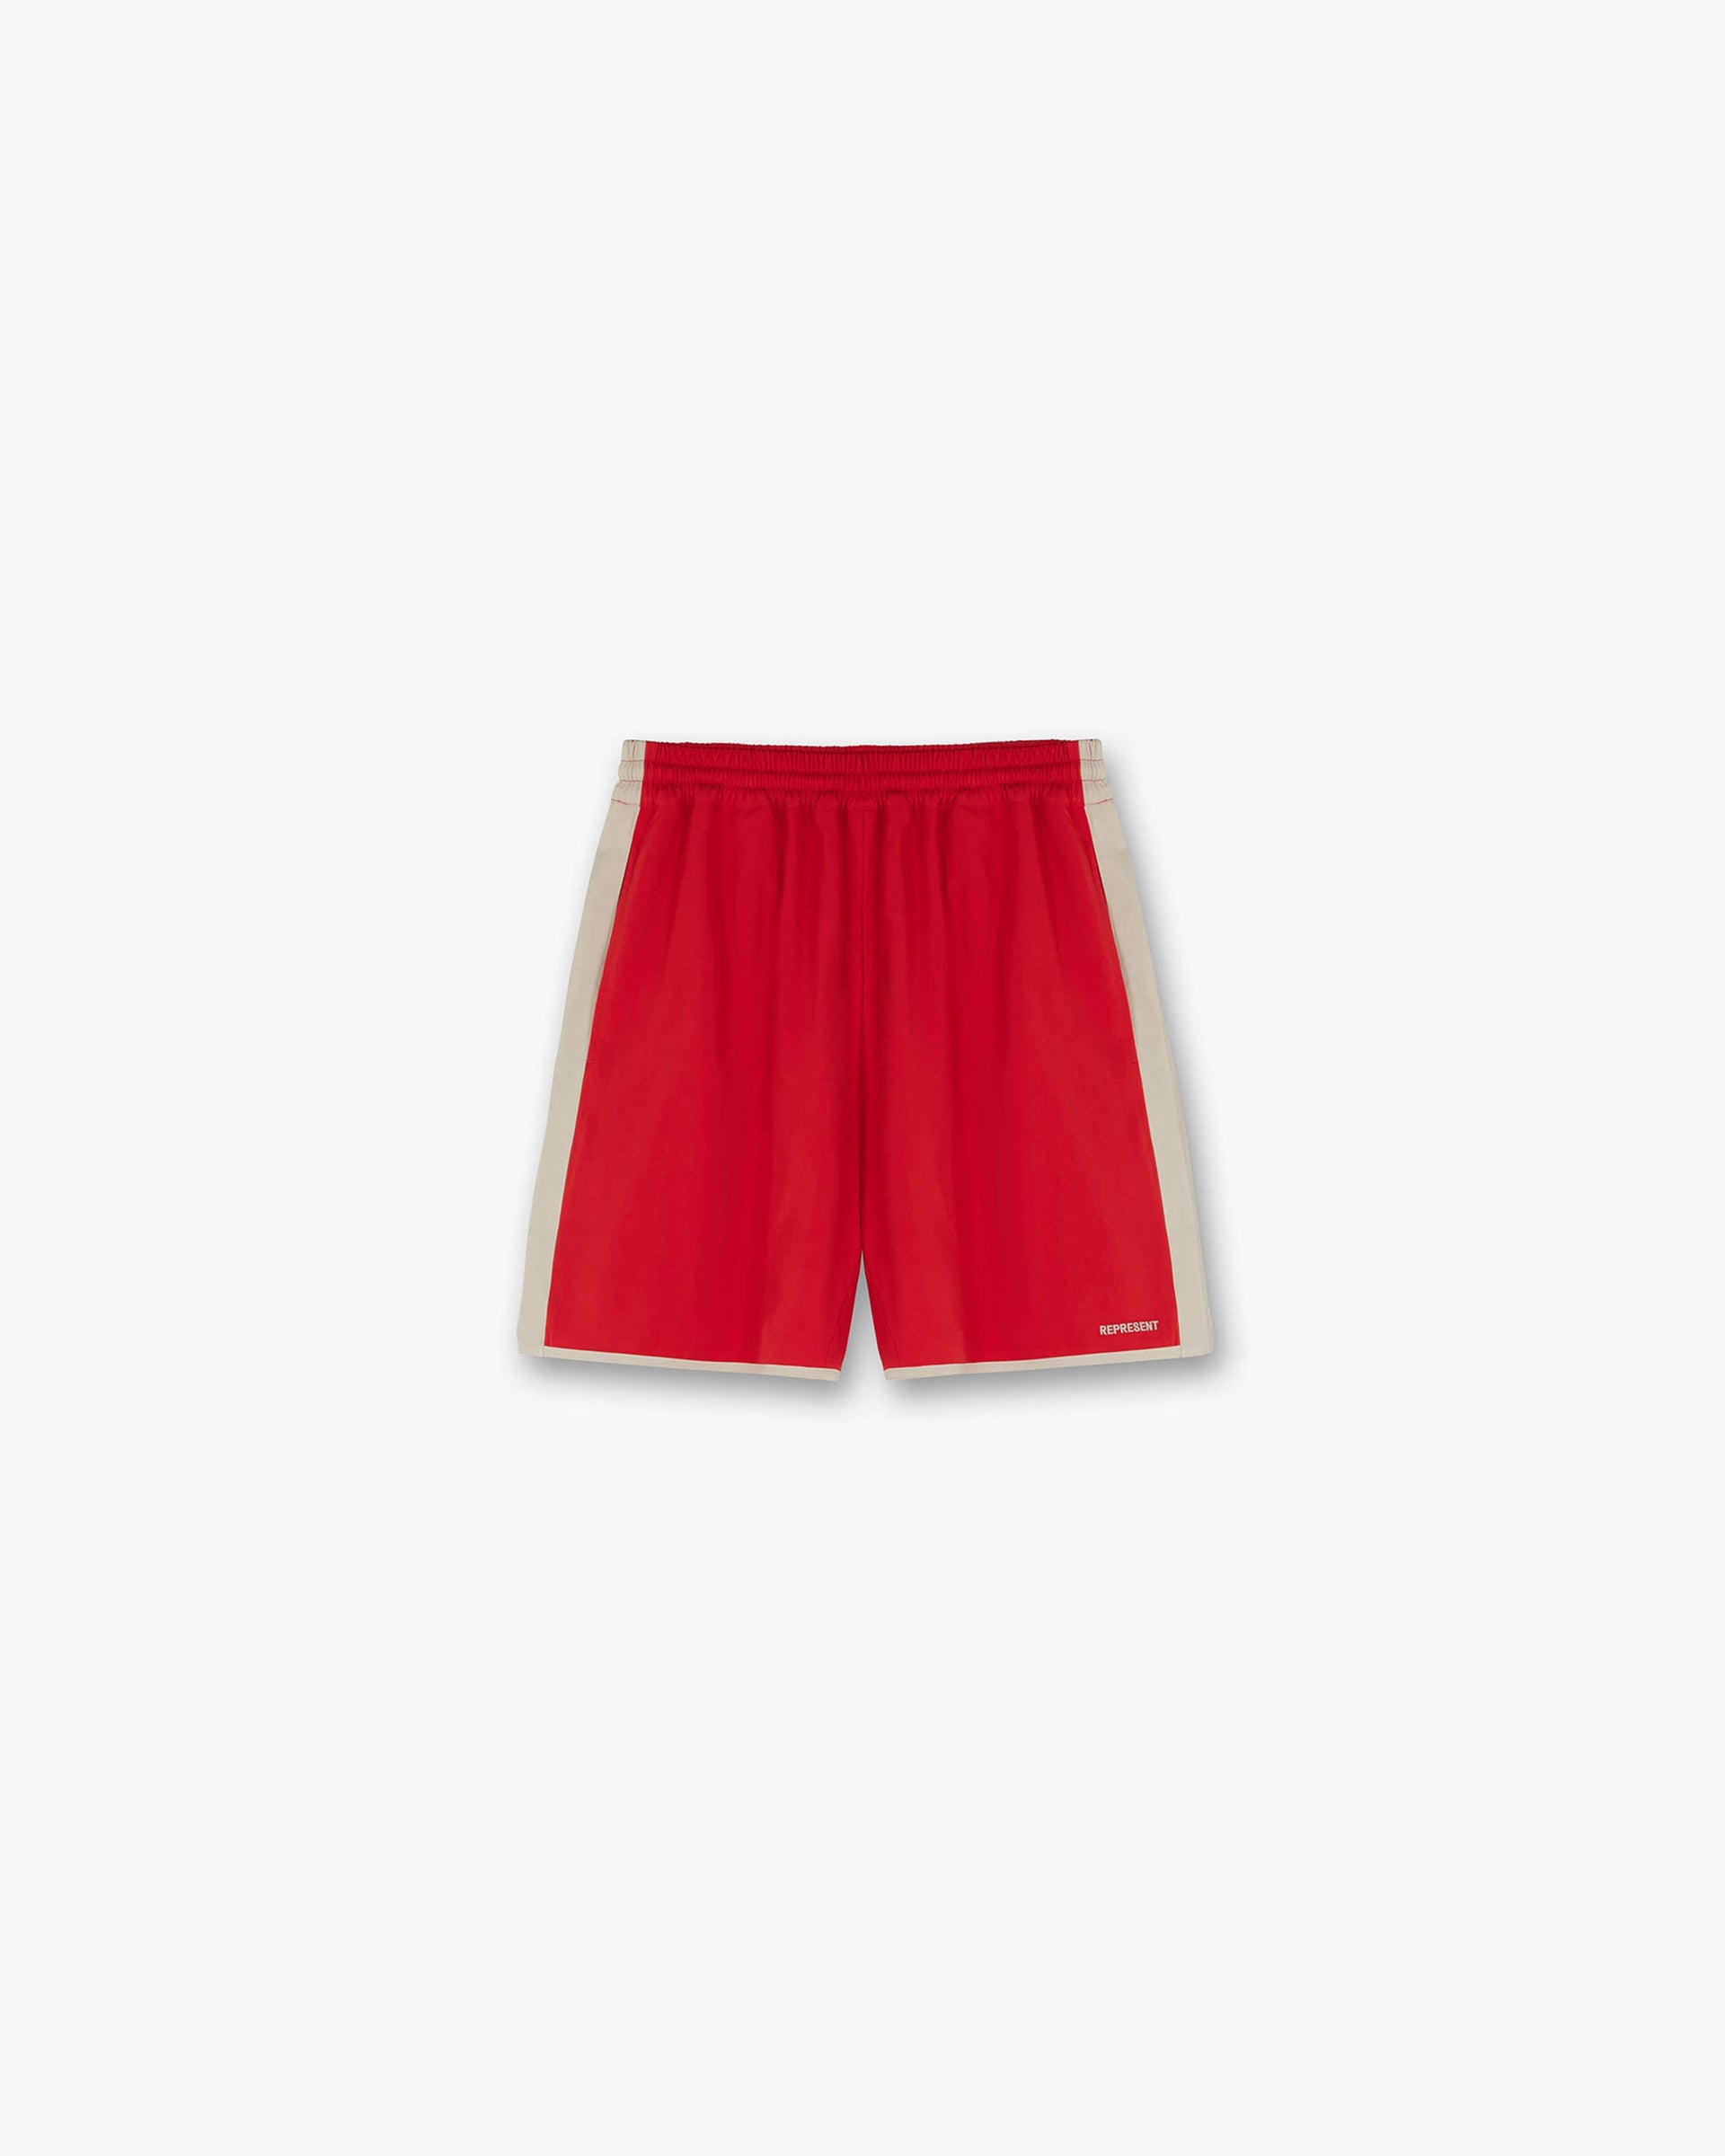 Souvenir Shorts | Burnt Red Shorts SS23 | Represent Clo